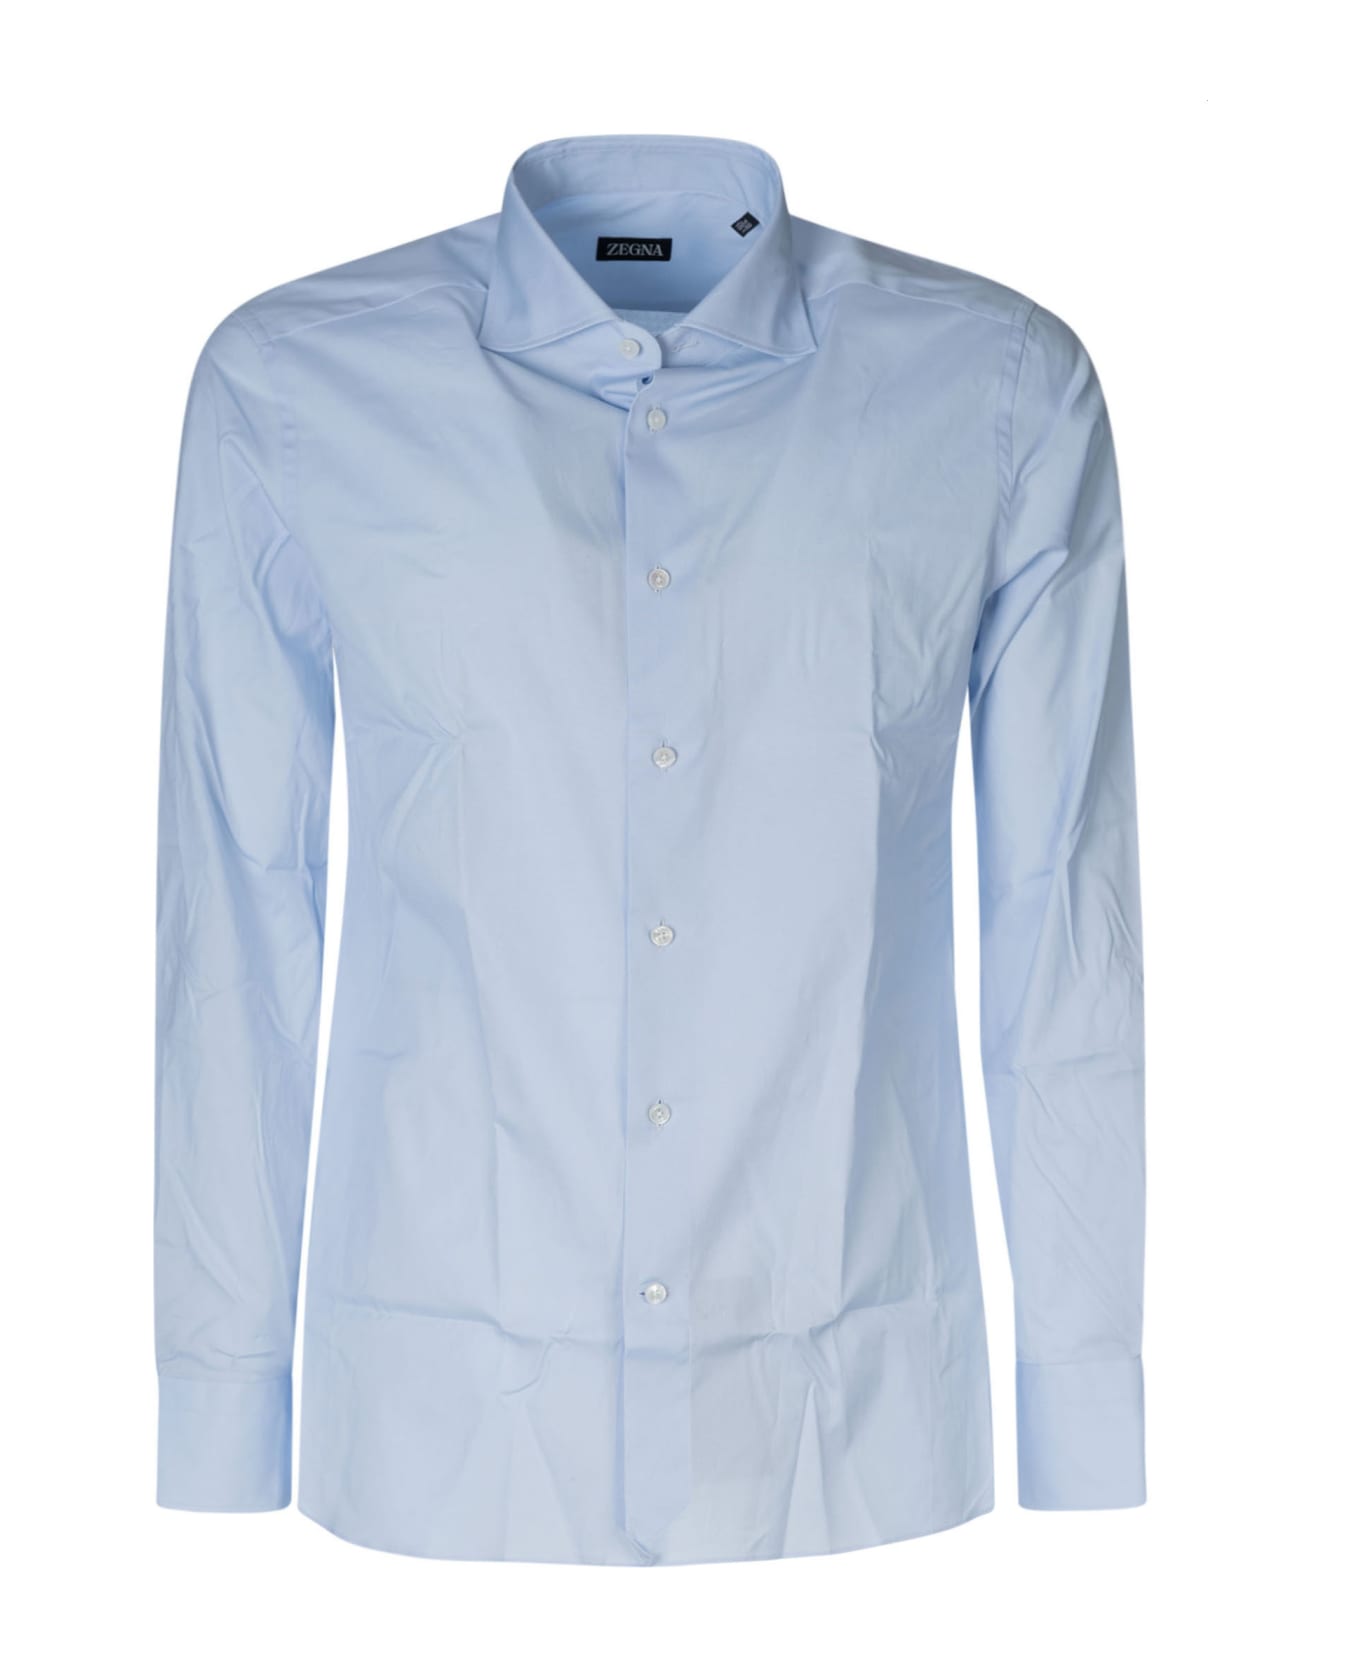 Zegna Long-sleeved Shirt - Celeste